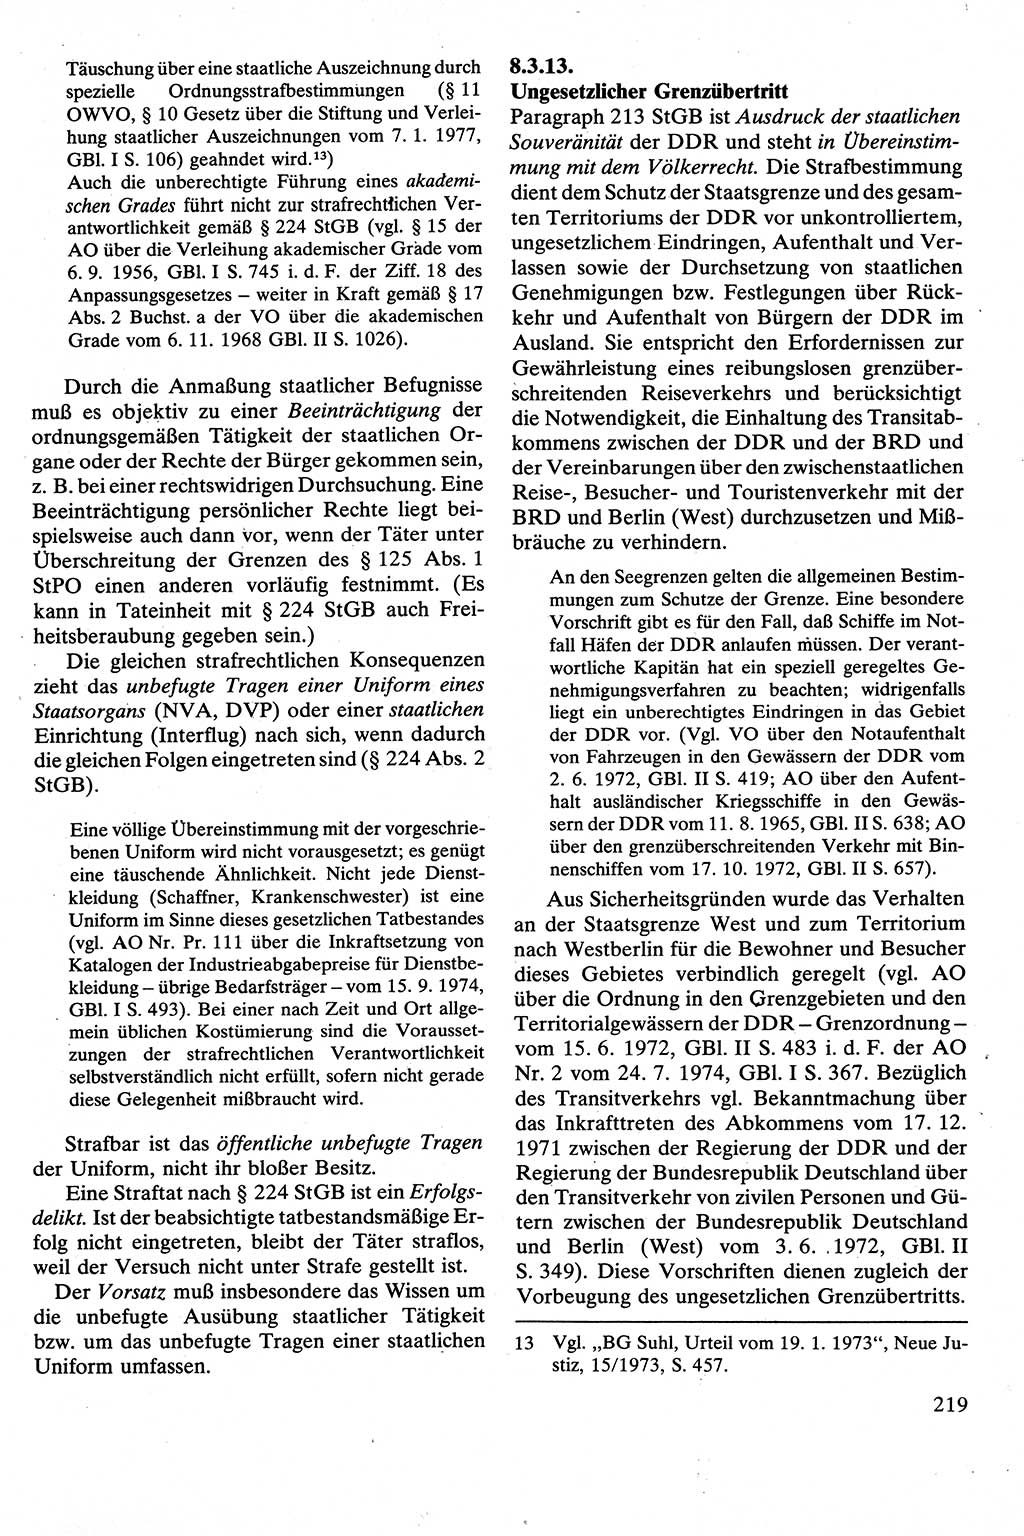 Strafrecht [Deutsche Demokratische Republik (DDR)], Besonderer Teil, Lehrbuch 1981, Seite 219 (Strafr. DDR BT Lb. 1981, S. 219)